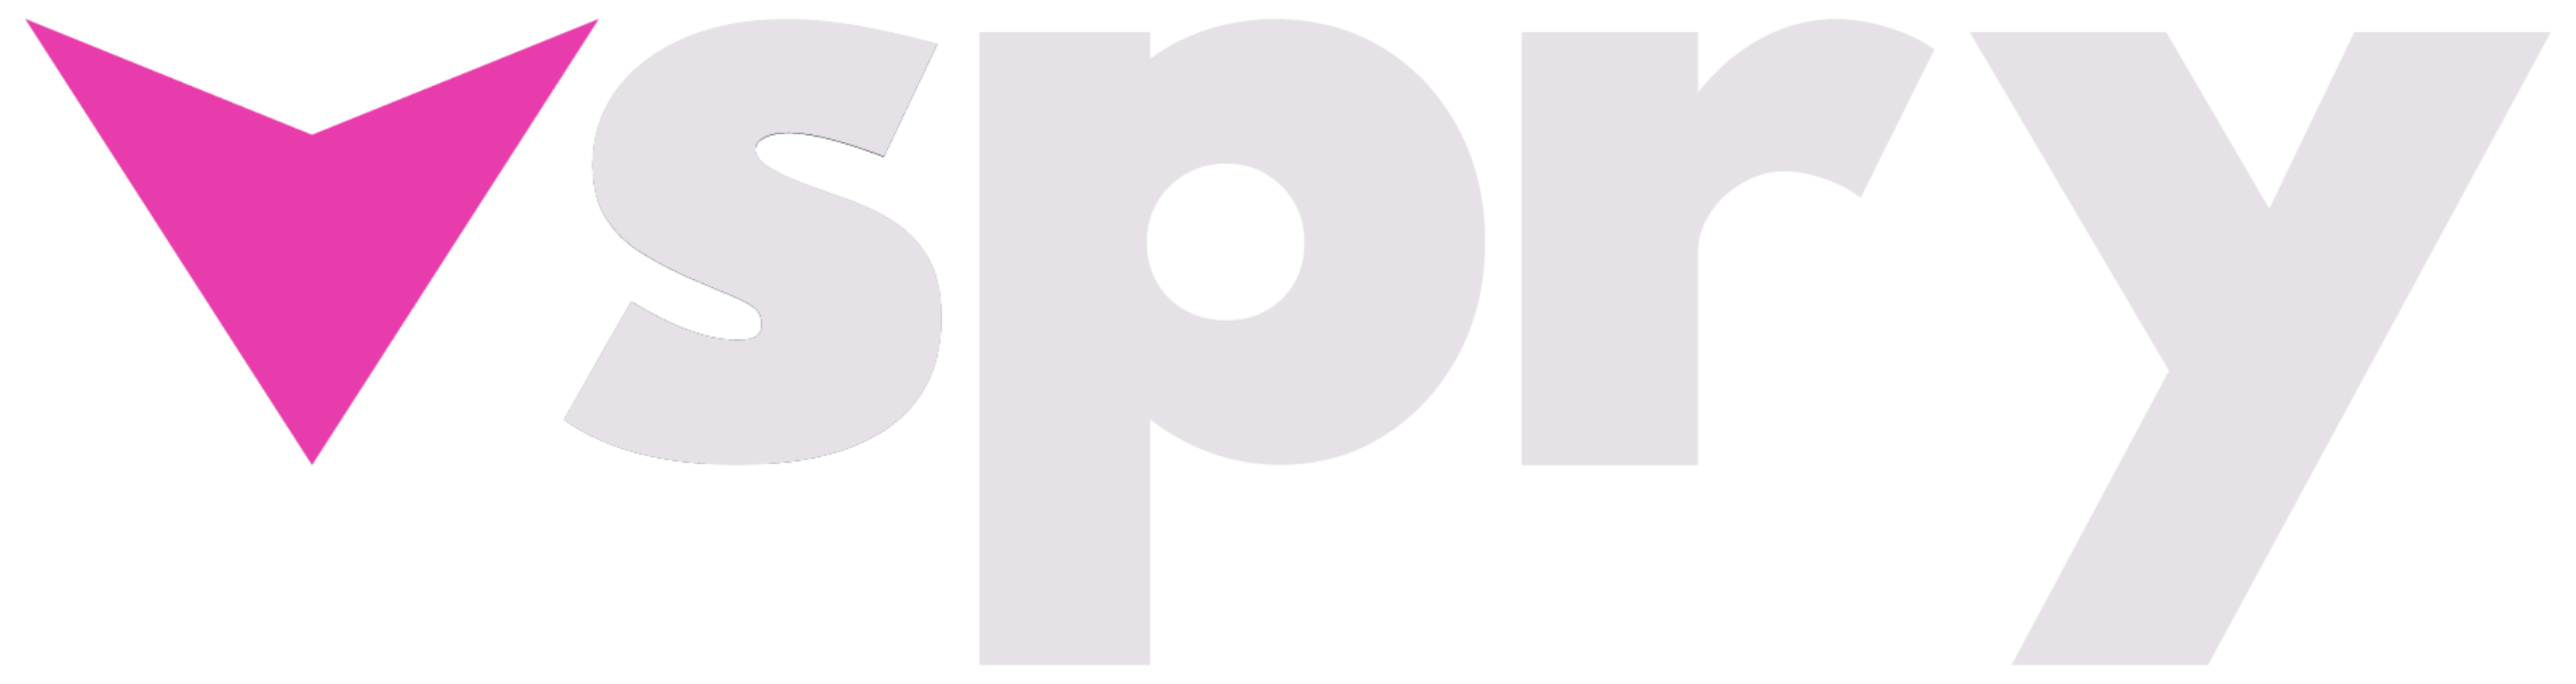 Vspry logo